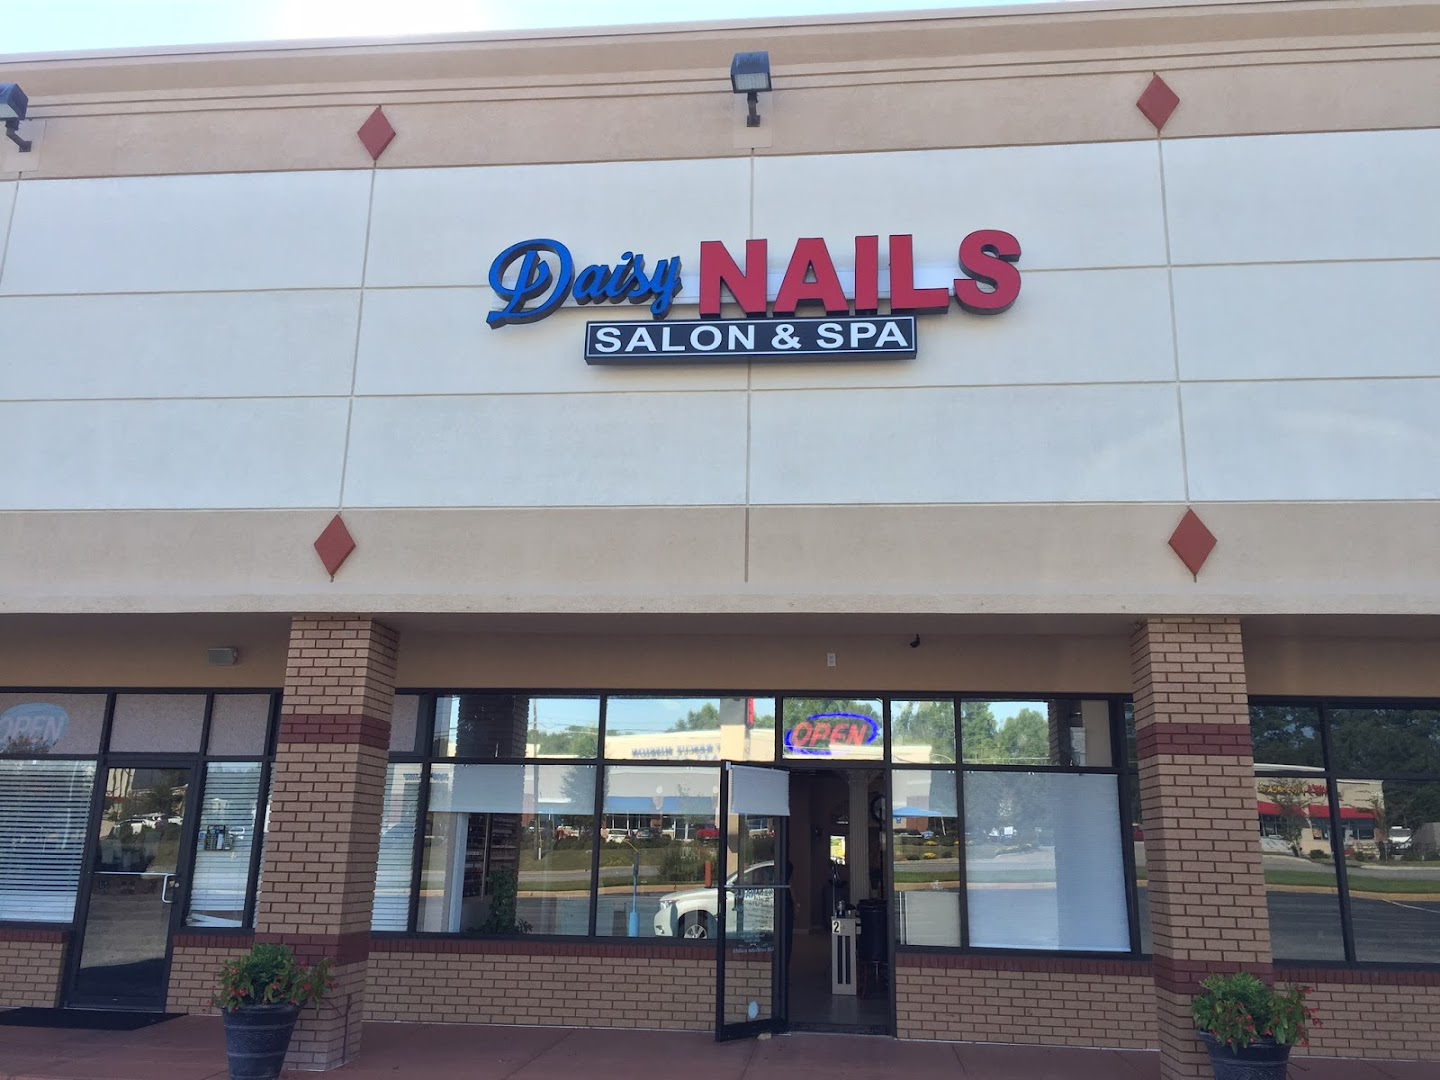 Daisy Nails Salon and Spa